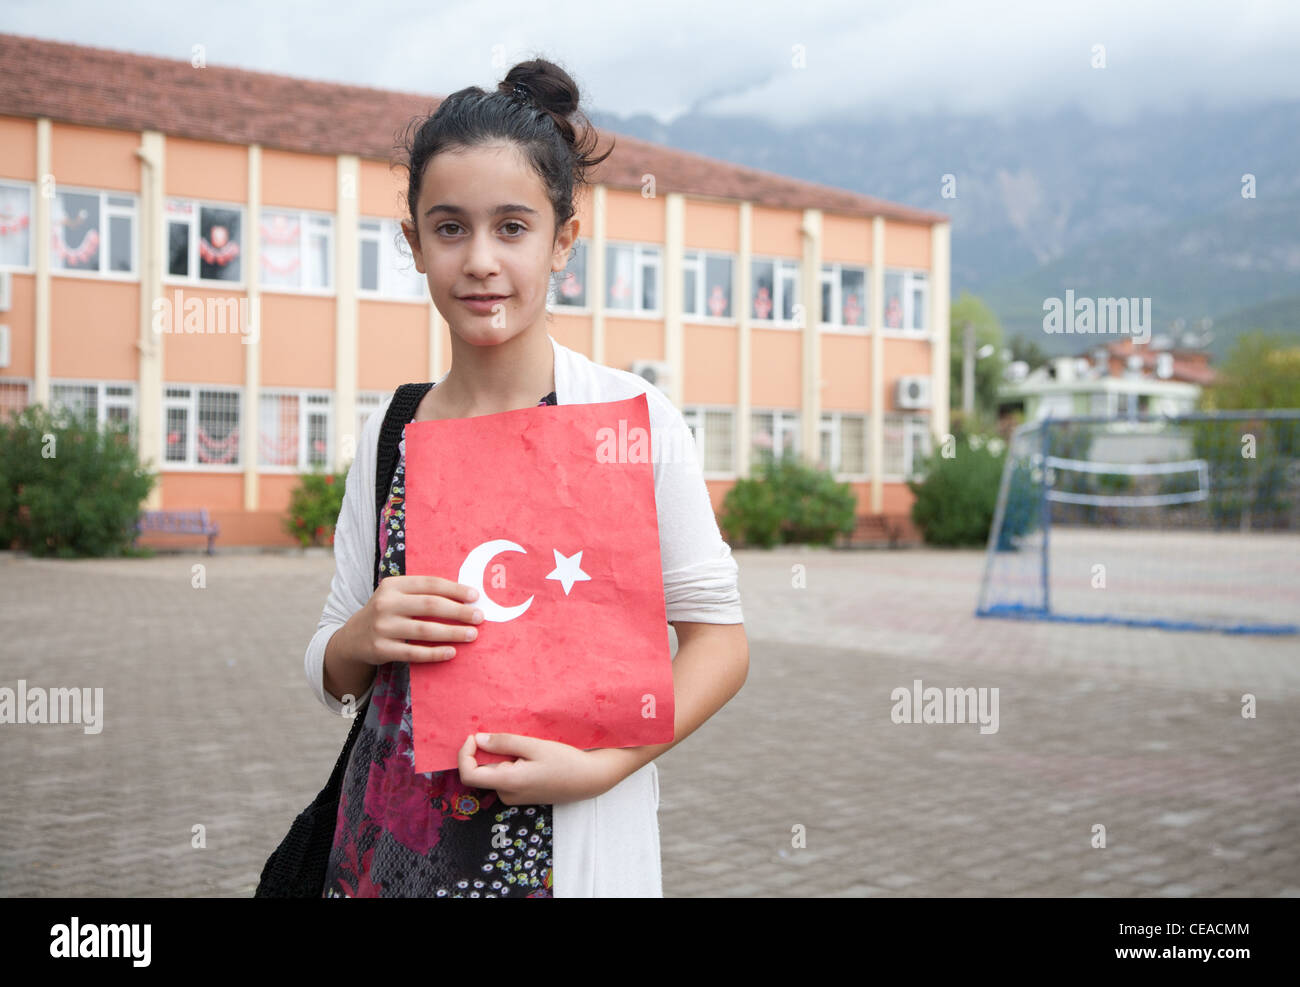 Türkische Schülerin feiert Tag der türkischen Republik in Tekirova Stadt  halten handgefertigte Ordner mit nationalen Symbolen Stockfotografie - Alamy